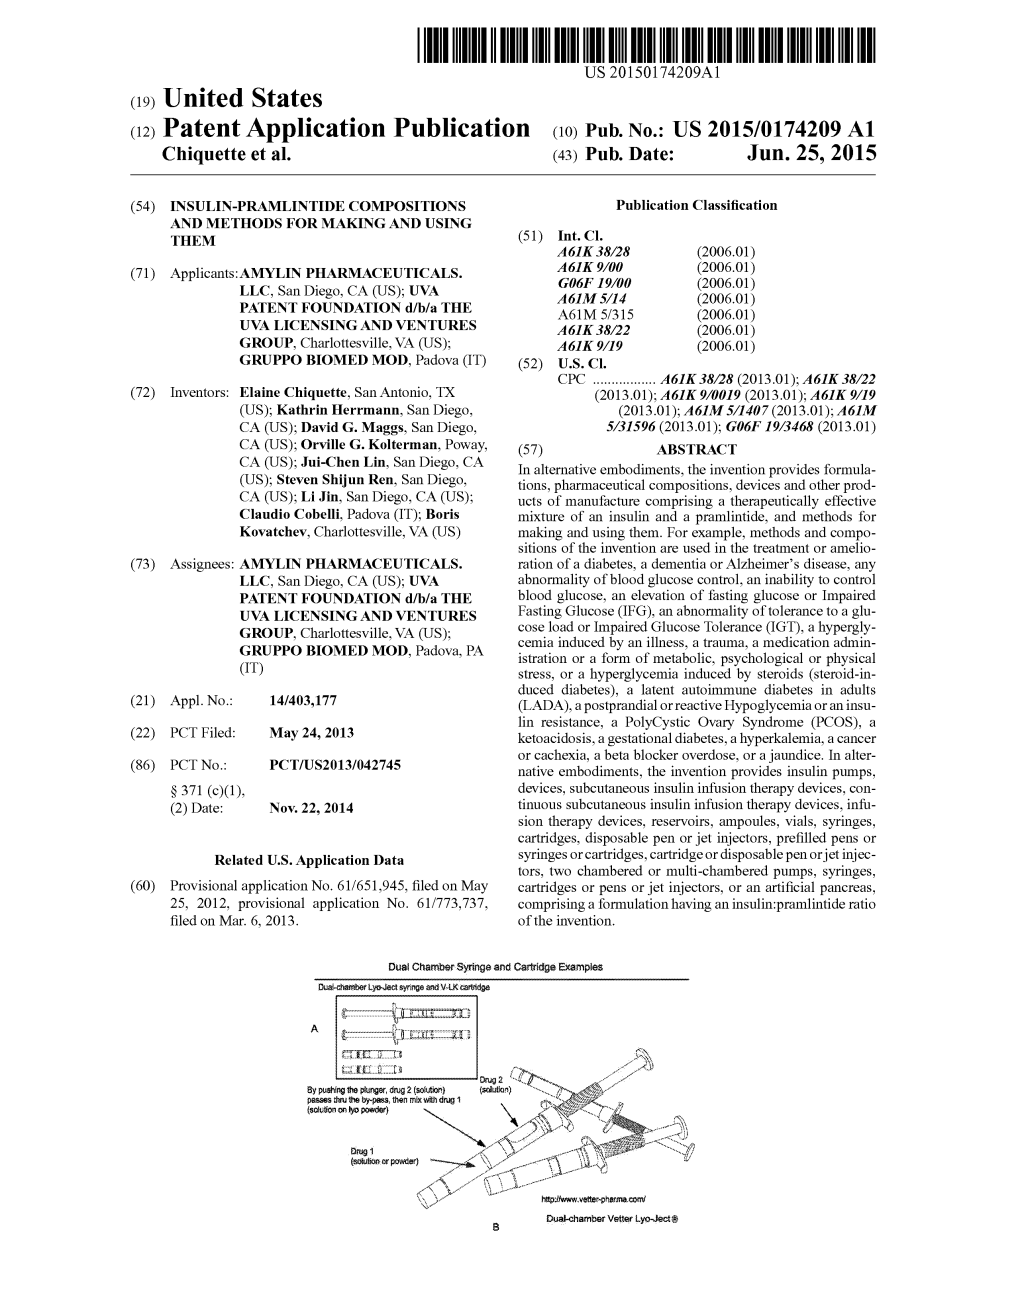 (12) Patent Application Publication (10) Pub. No.: US 2015/0174209 A1 Chiquette Et Al